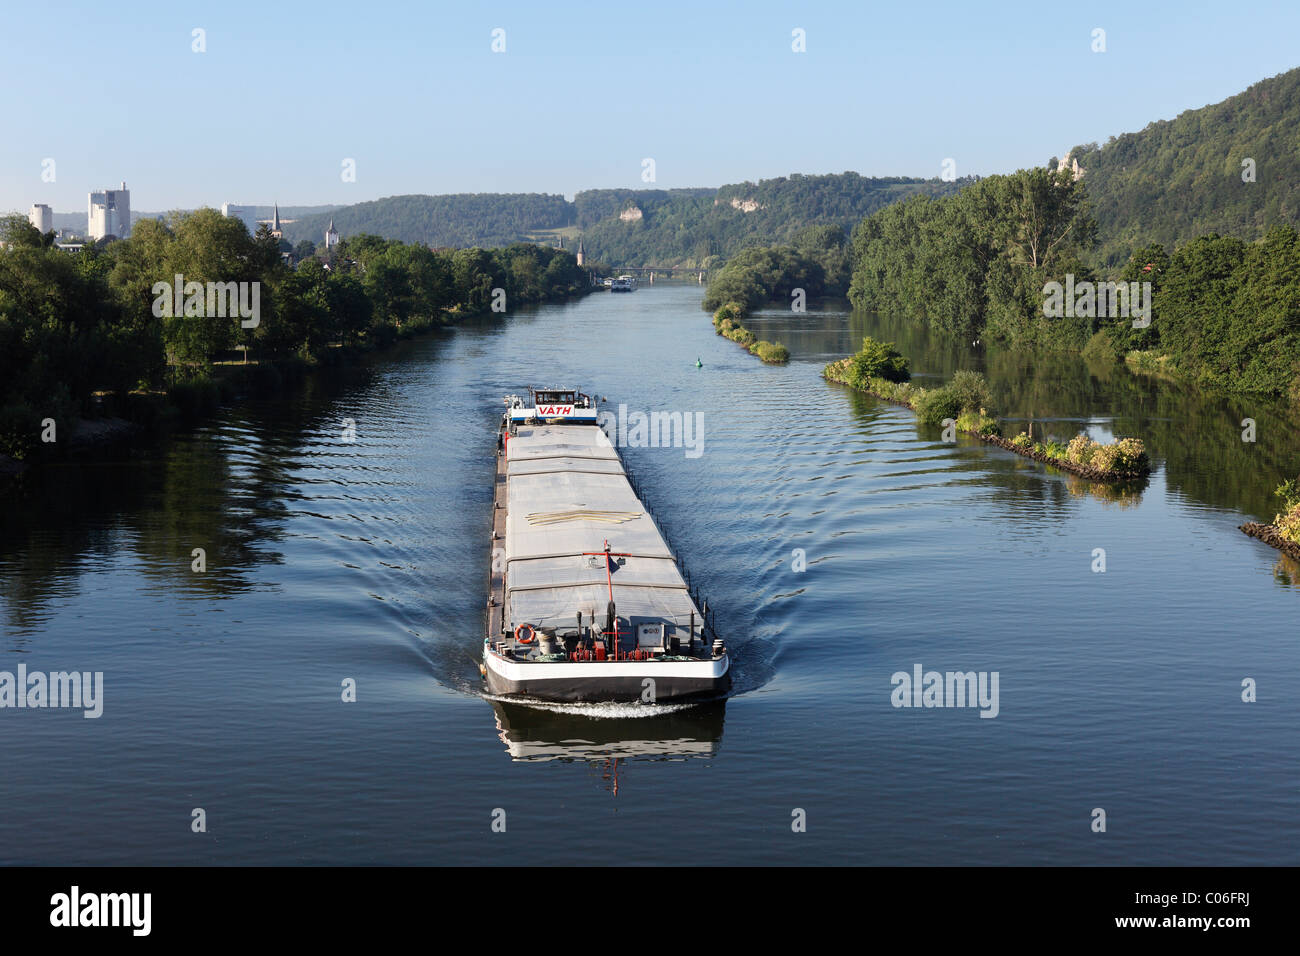 Cargo boat on the Main river, Karlstadt, Main-Franconia region, Lower Franconia, Franconia, Bavaria, Germany, Europe Stock Photo